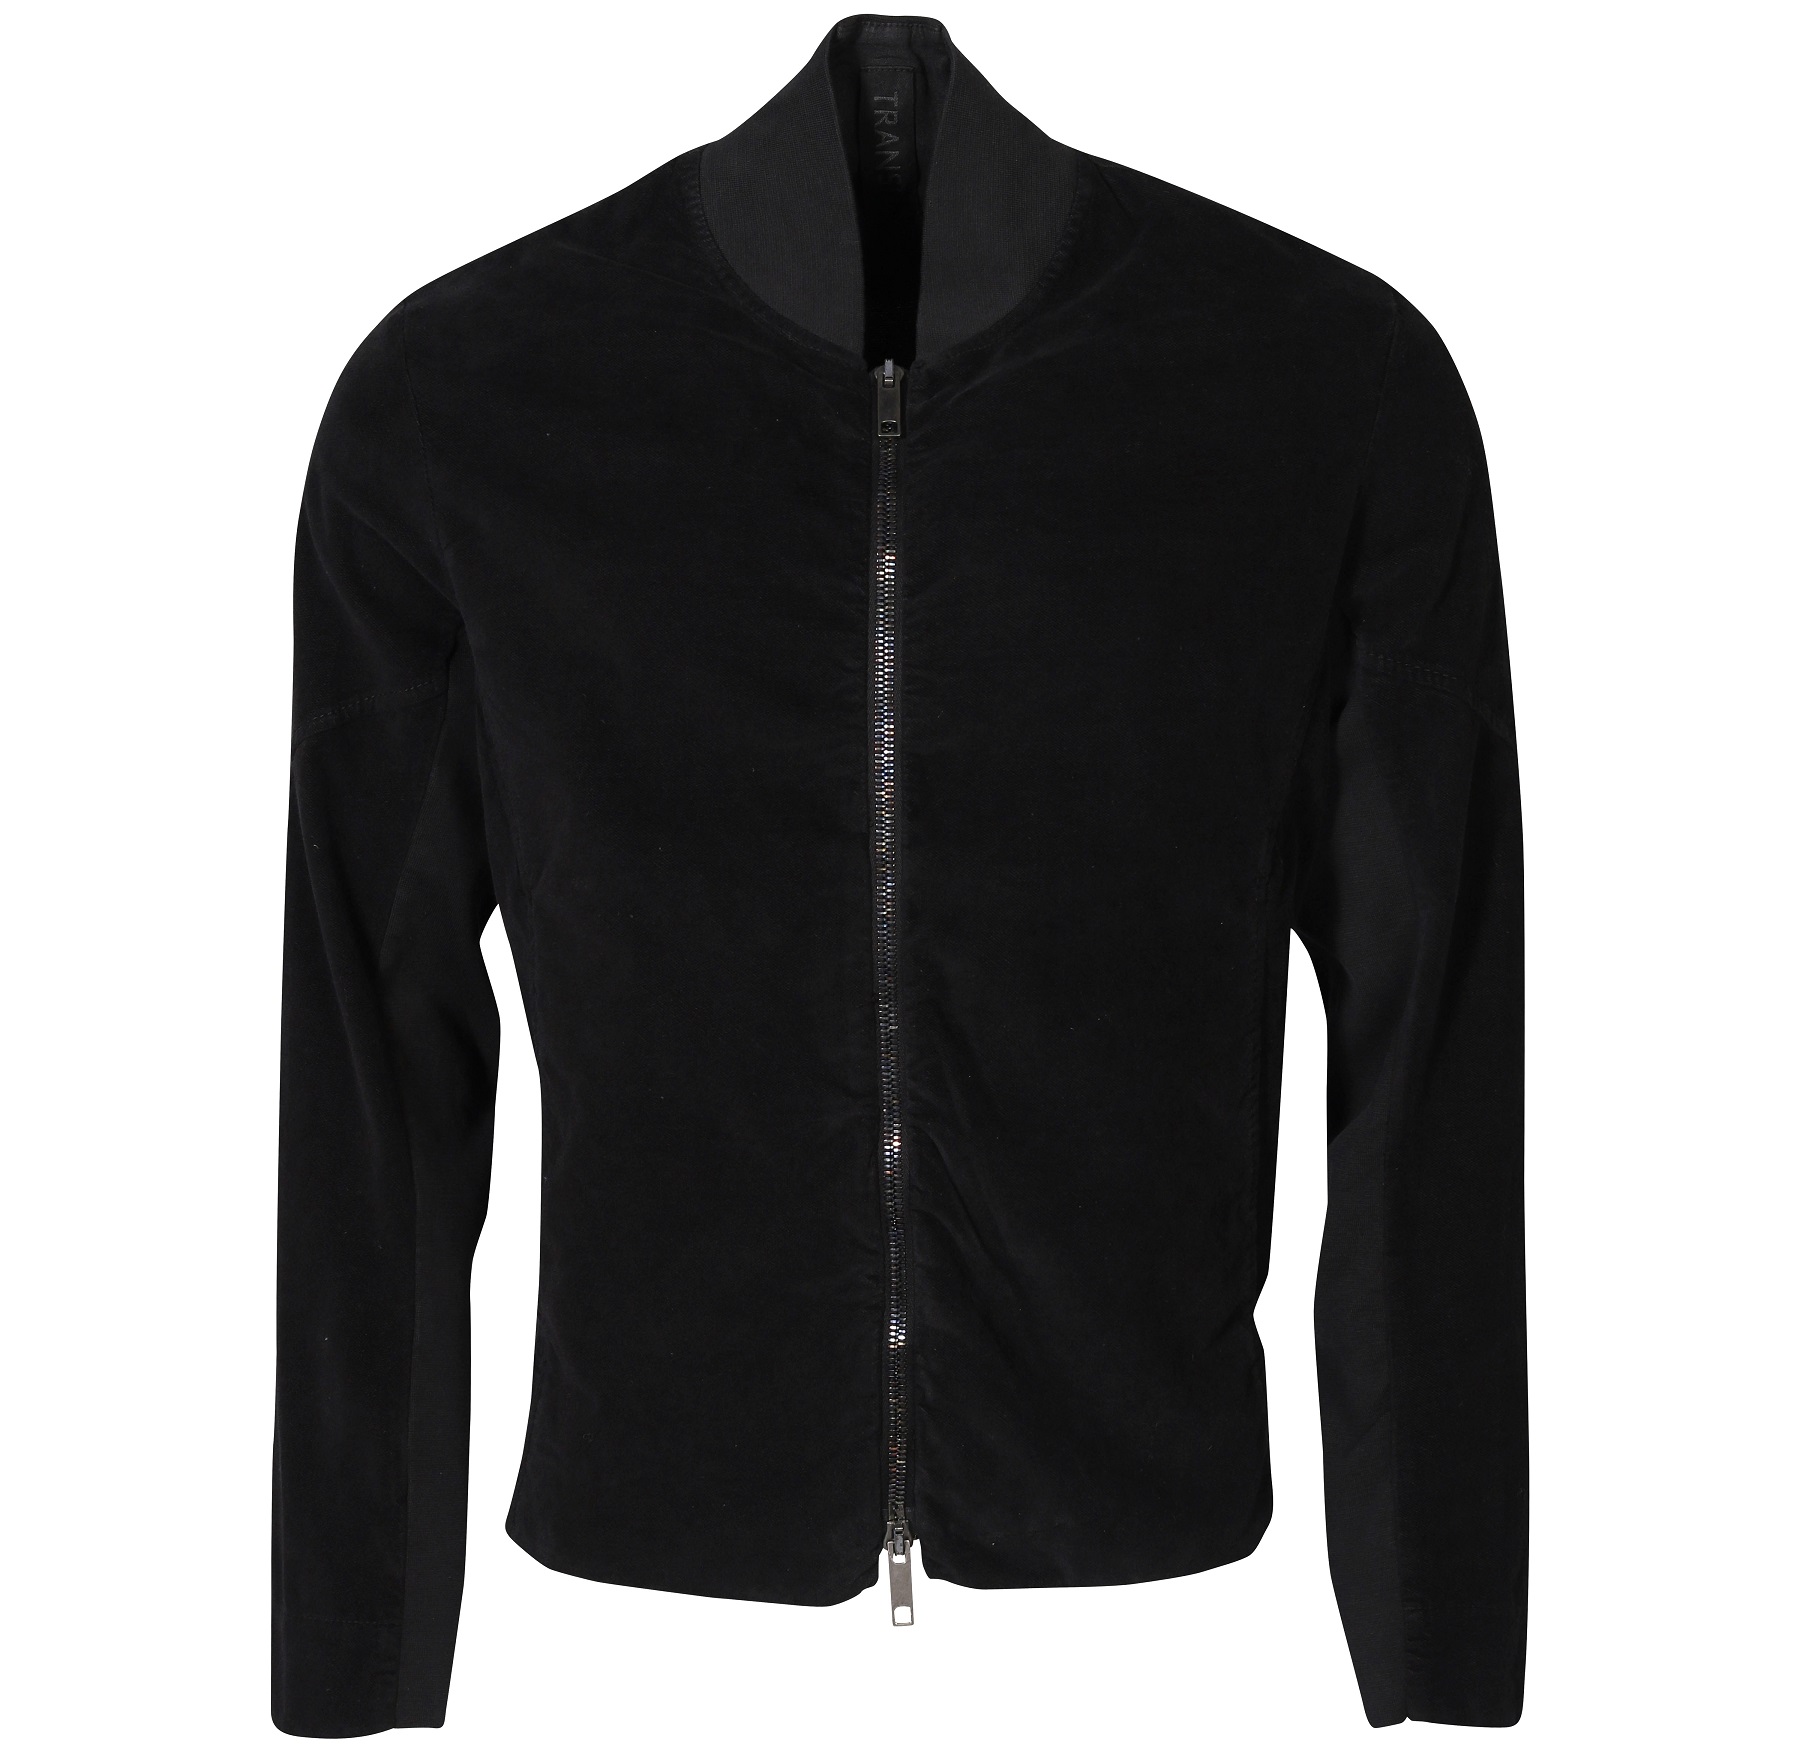 TRANSIT UOMO Cotton Stretch Jacket in Black